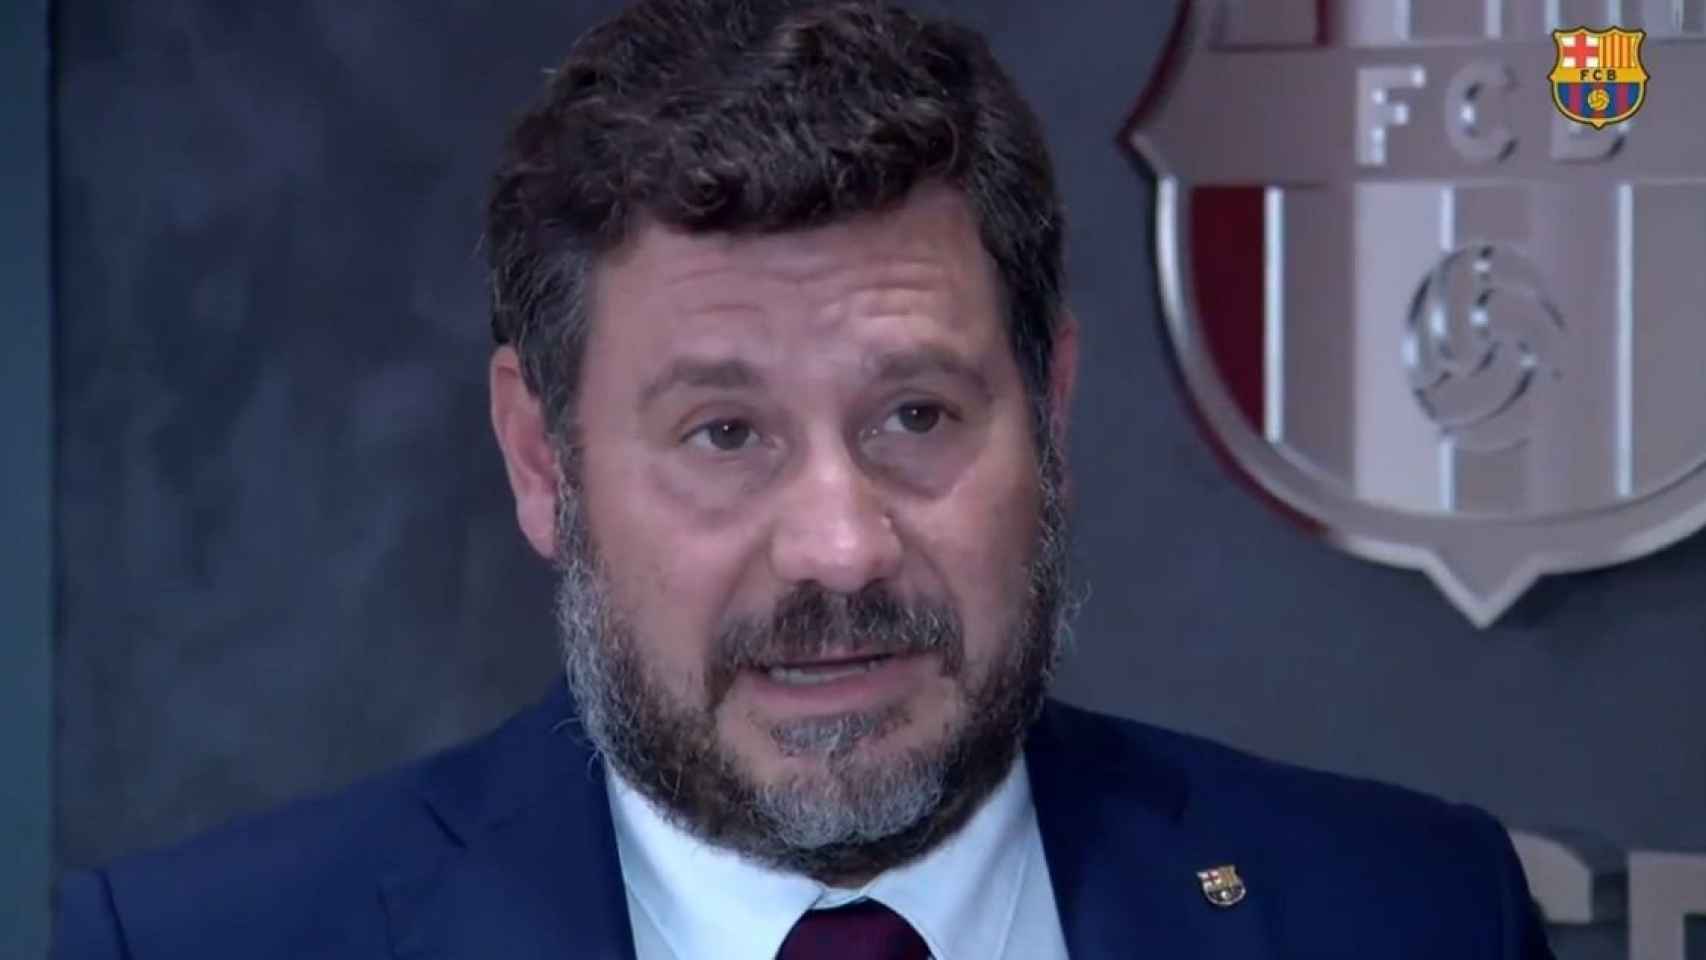 Eduard Romeu en la televisión del Barça / Barça TV